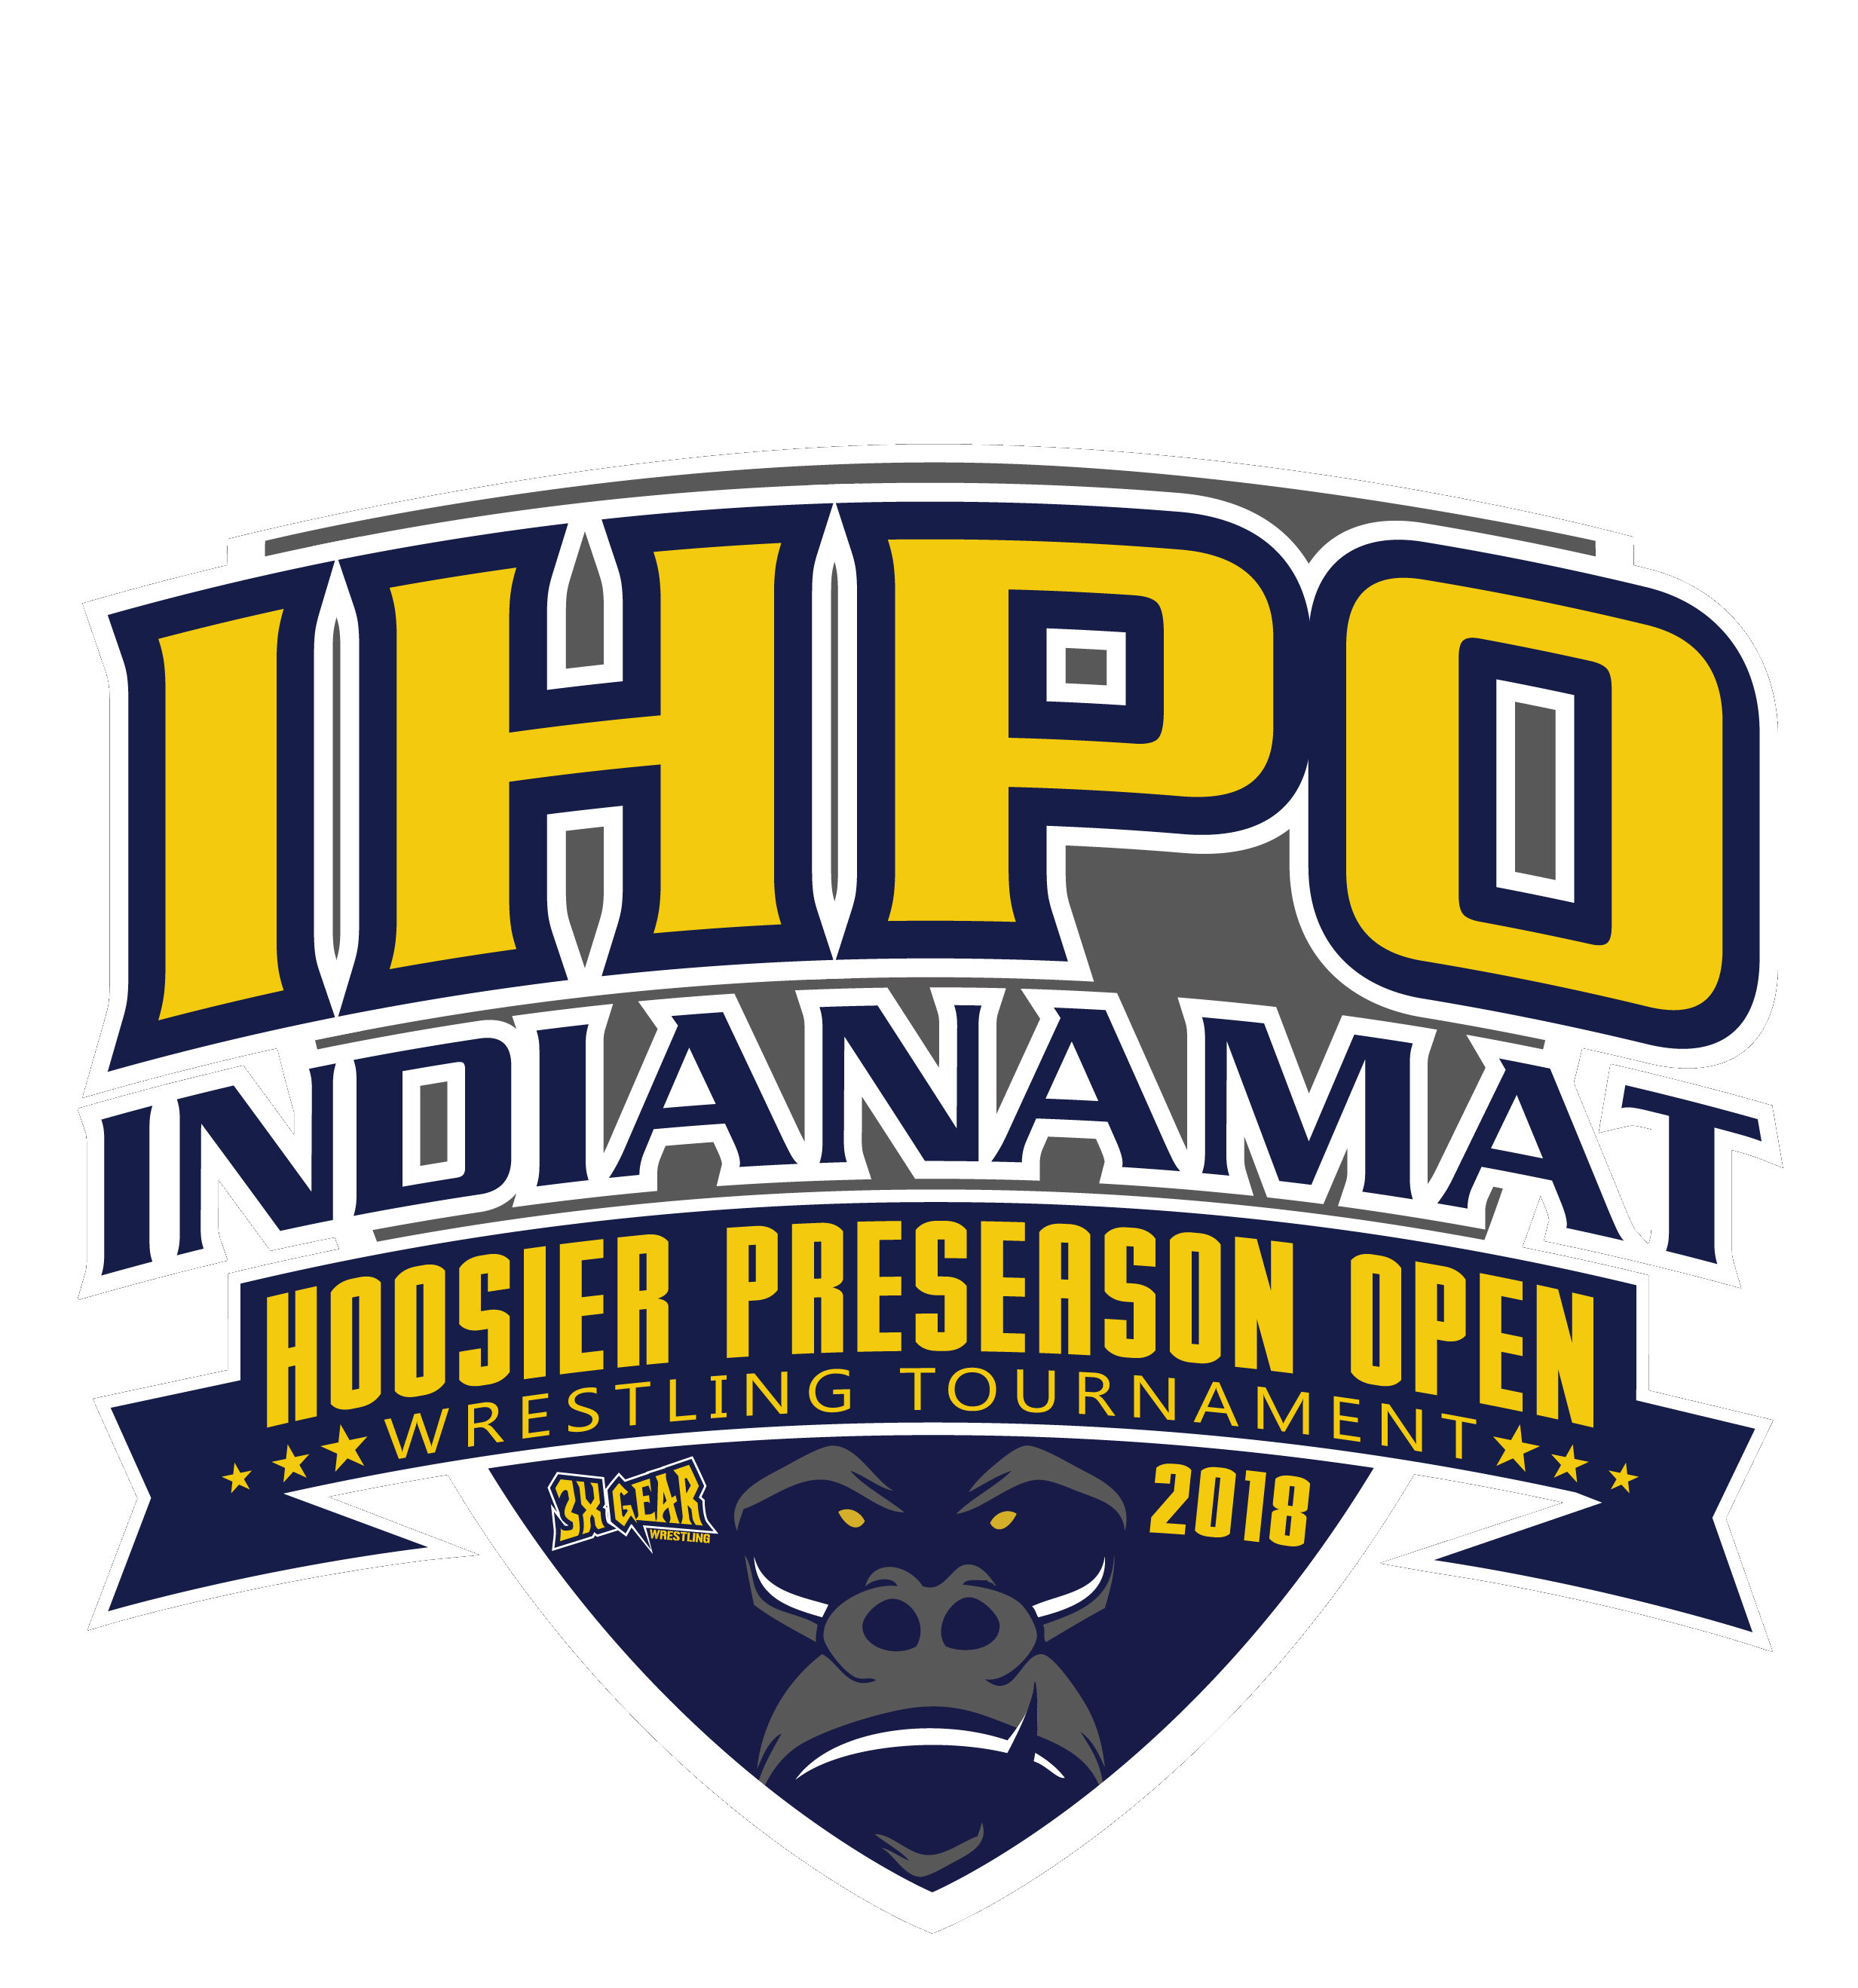 Brackets IndianaMat Hoosier Preseason Open